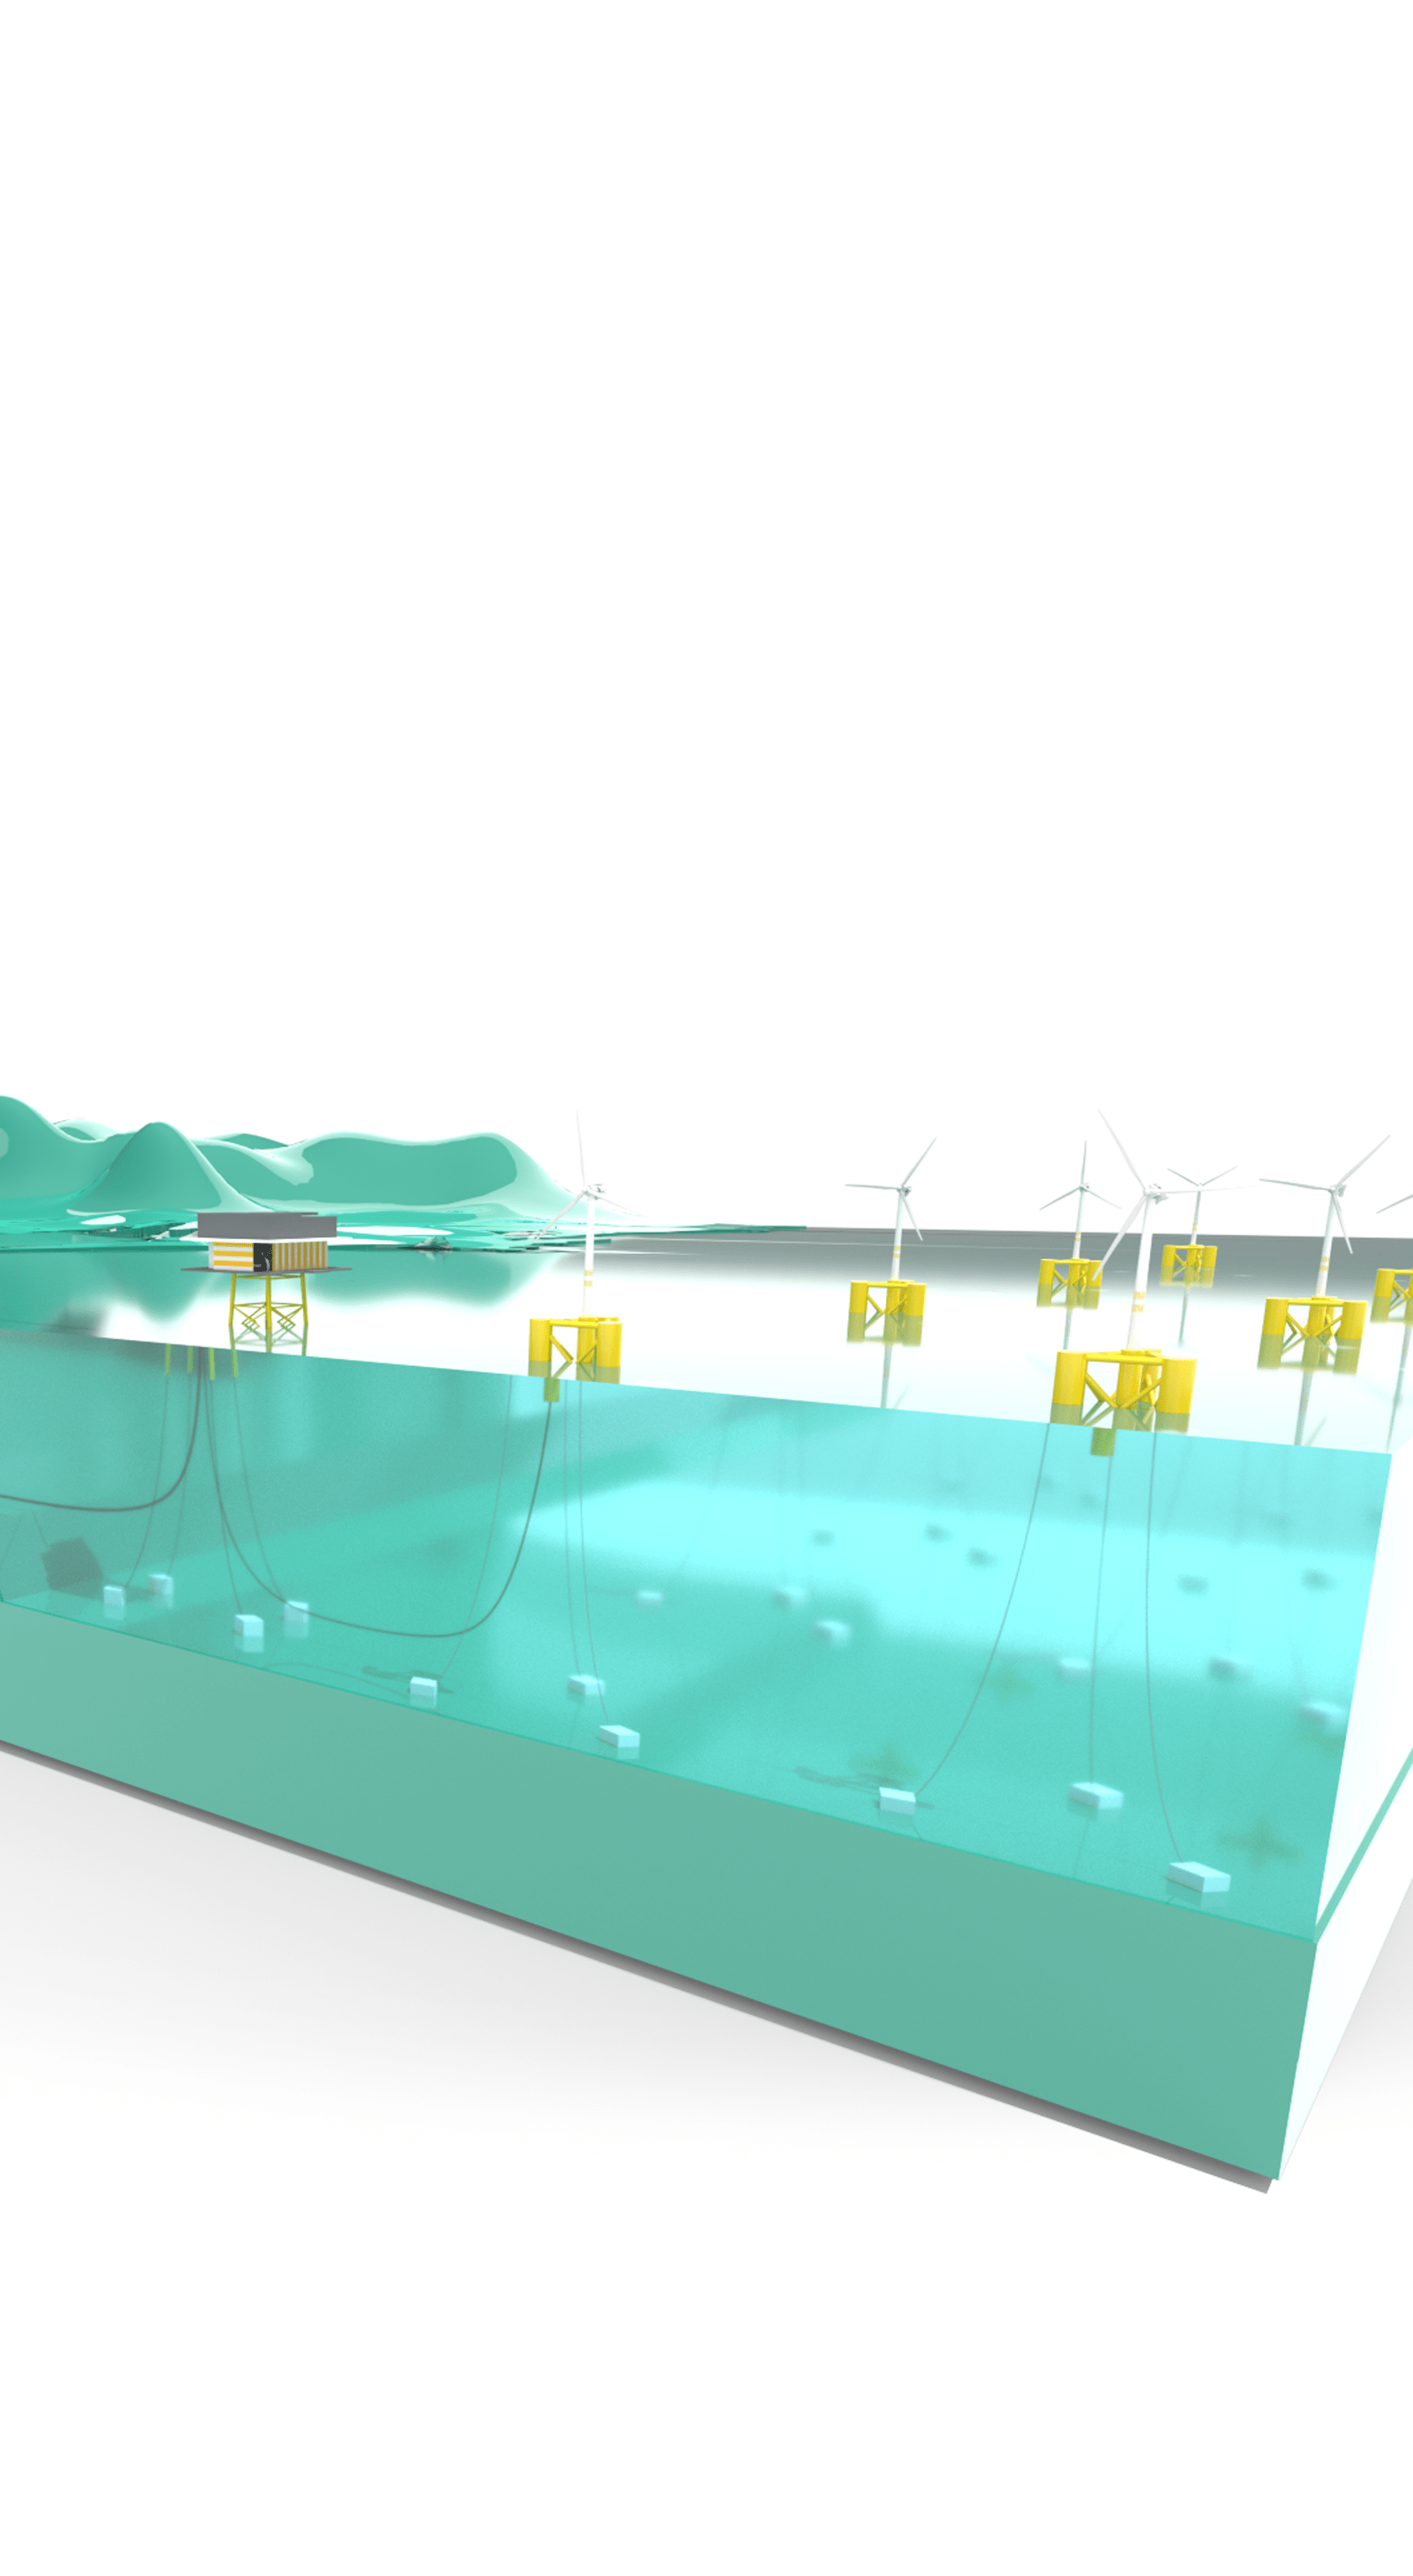 3D Offshore Wind Farm diagram